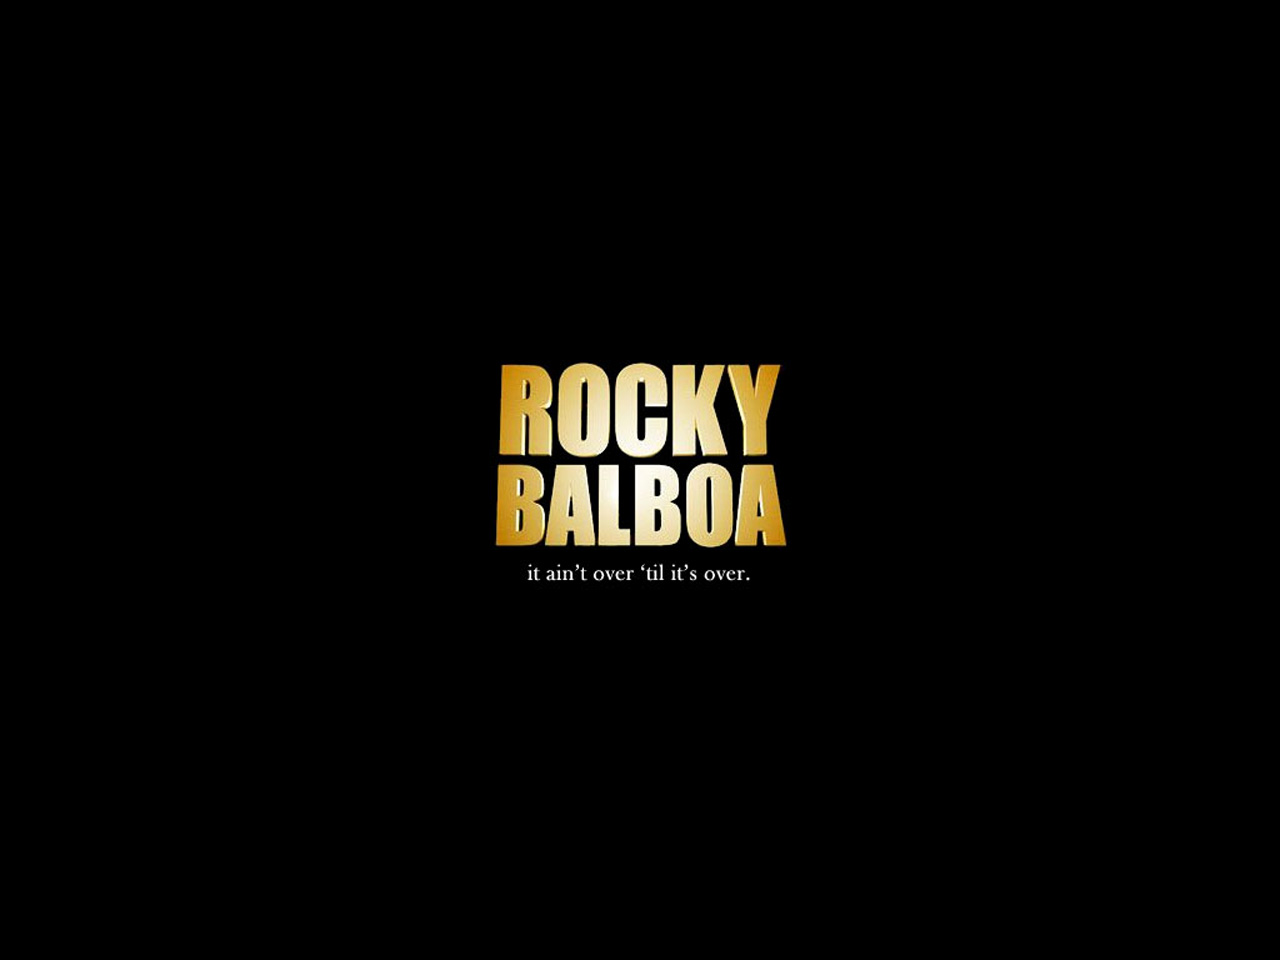 Wallpapers Rocky Balboa Papel De Parede 1280x960 #rocky